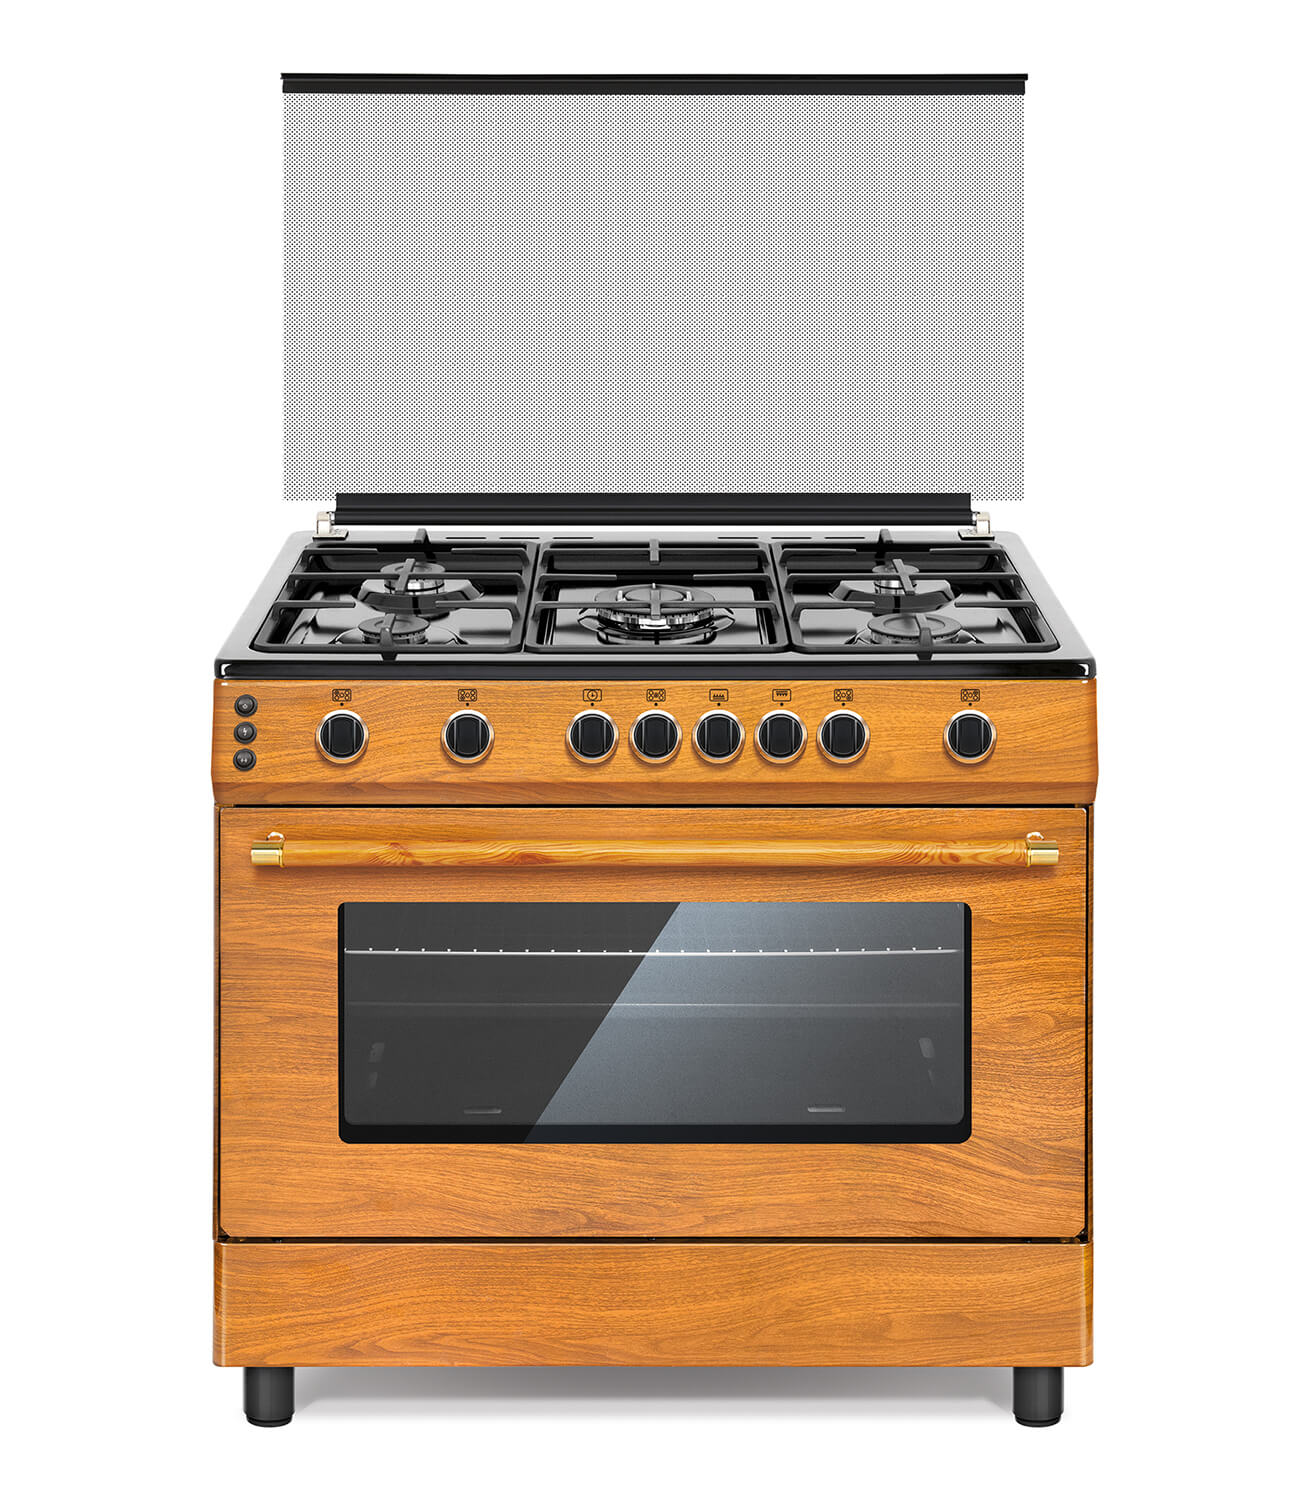 OG-9050 / Wooden Type Oven